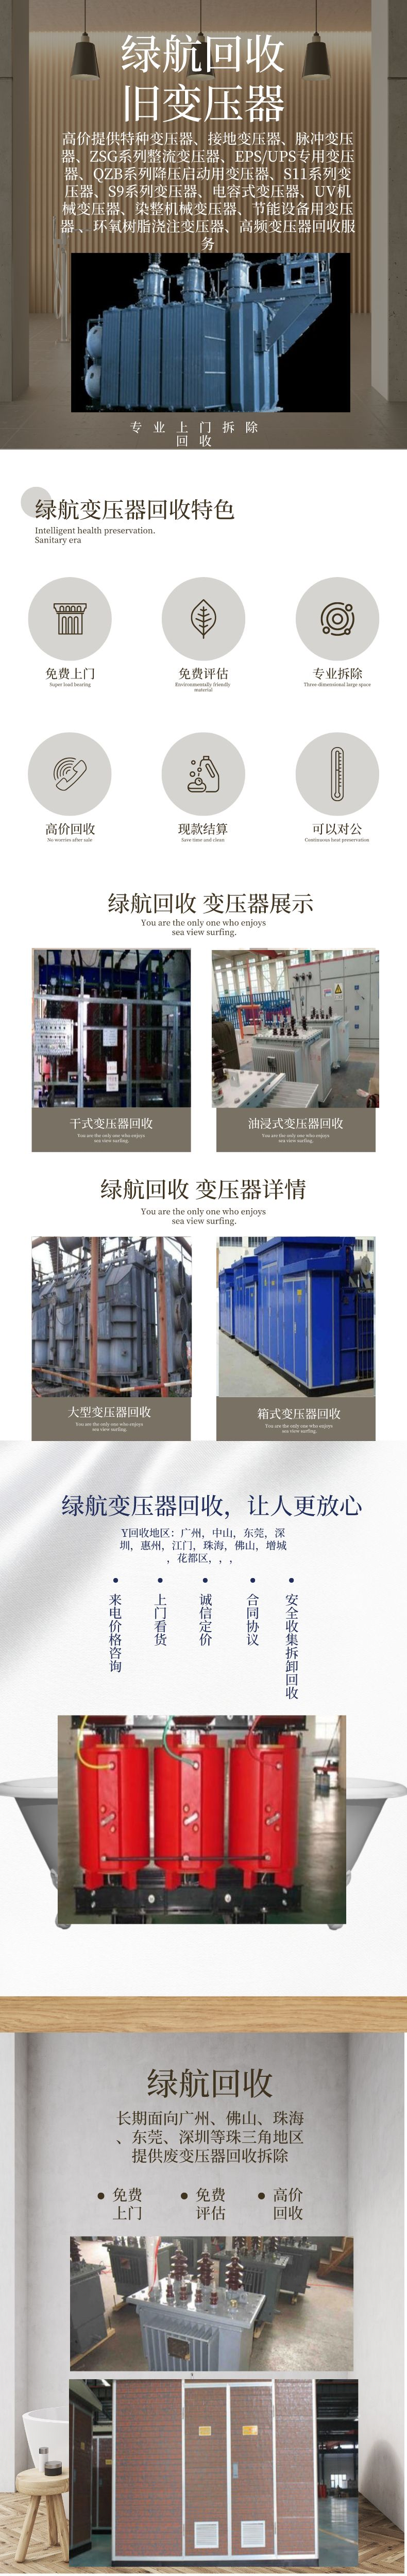 广州花都五金设备拆除回收变电站收购厂家提供服务